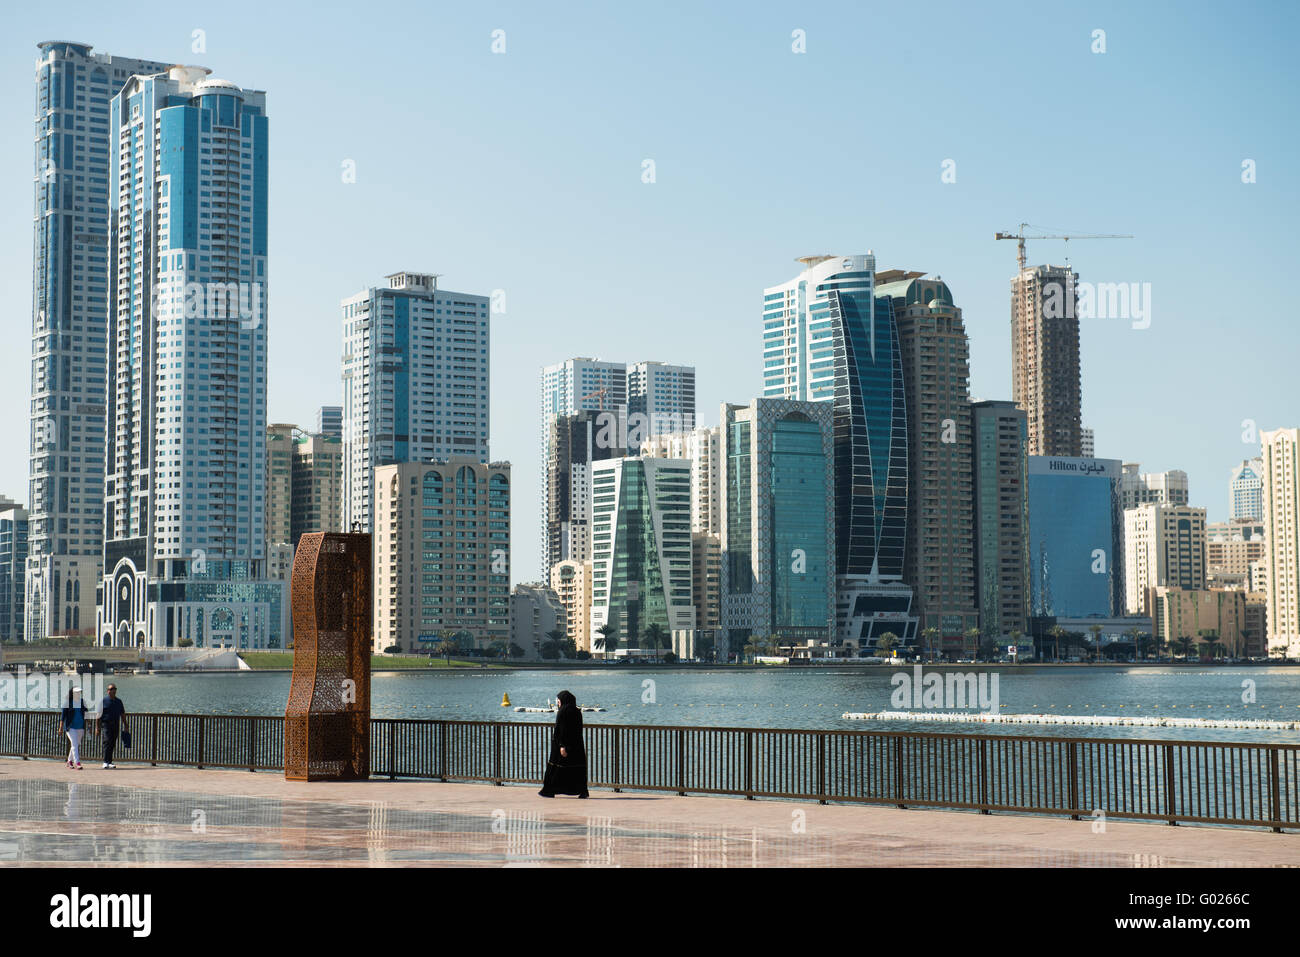 Emirate of Sharjah, UAE. Stock Photo